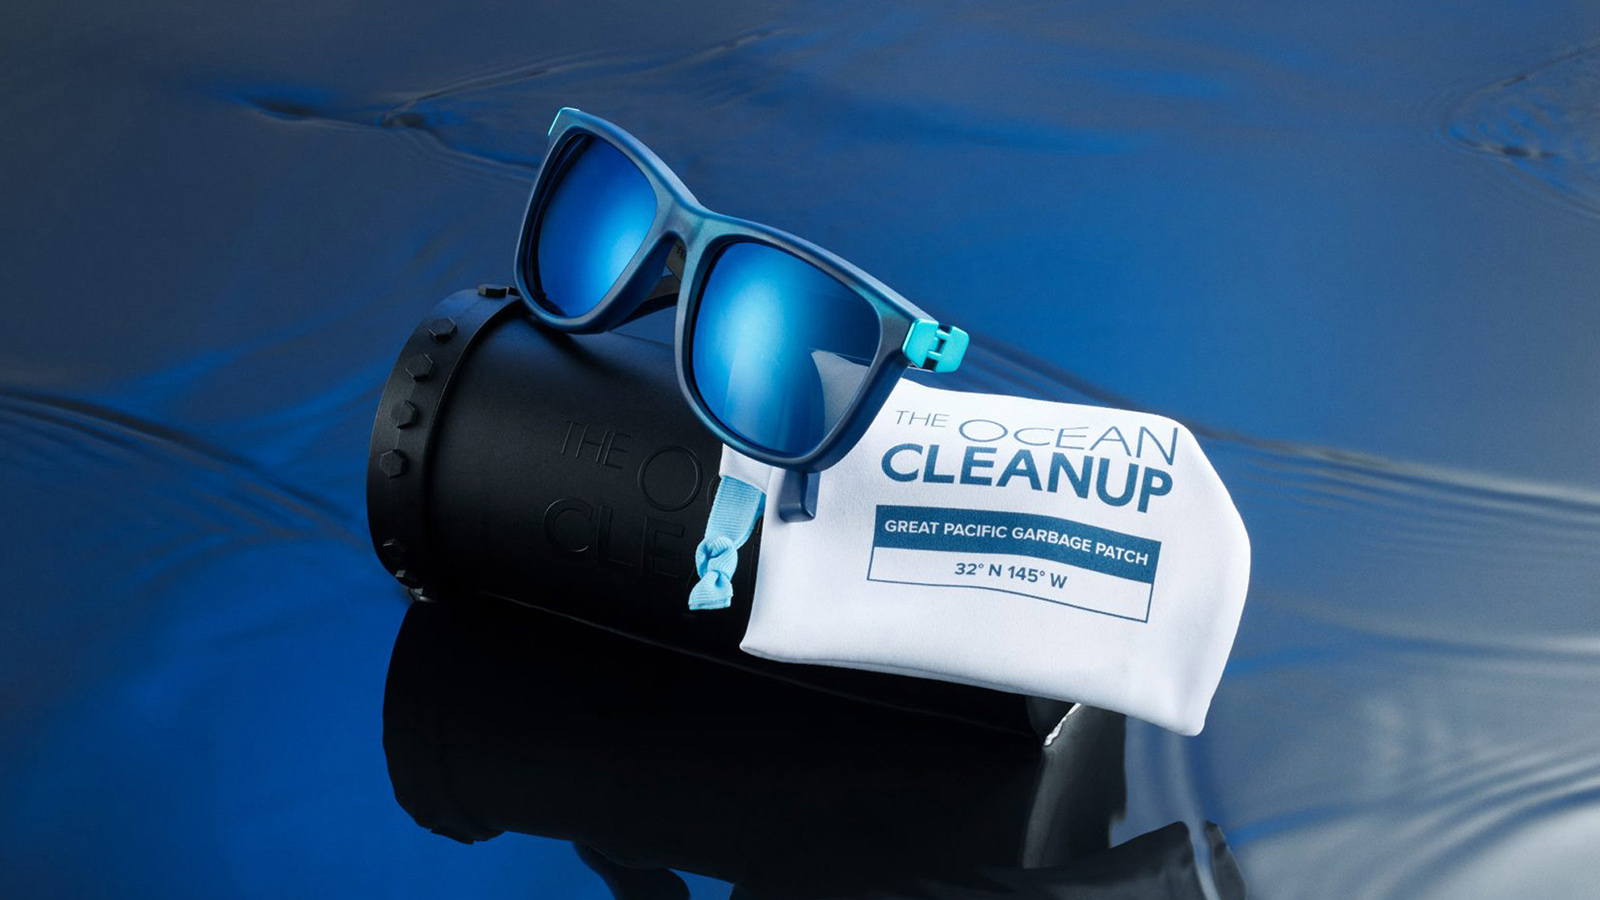 Yves Béhar Ocean Cleanup Sunglasses